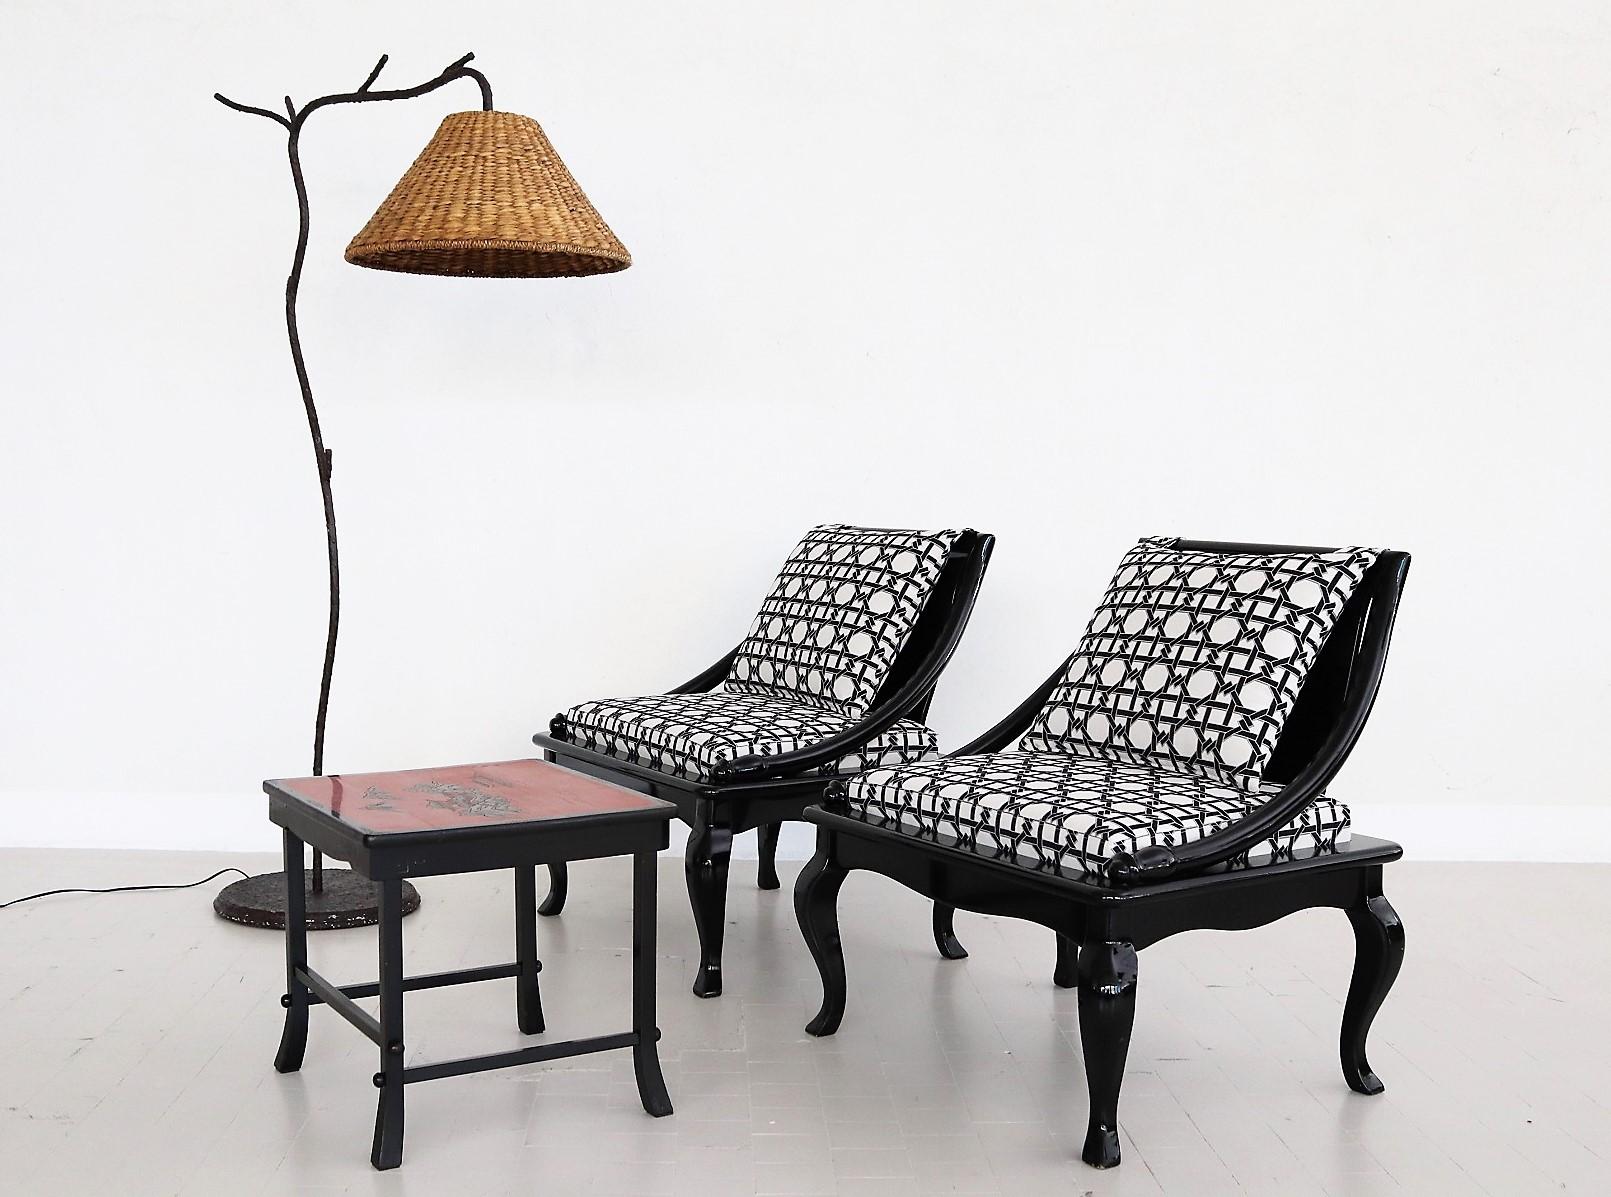 Schönes Set aus zwei niedrigen Stühlen oder Beistellstühlen aus lackiertem Holz im asiatischen, orientalischen Stil.
Das Sitzkissen, das leicht abnehmbar ist, hat einen Holzfuß und ist sehr stabil.
Das Sitzkissen und das Rückenkissen, das mit